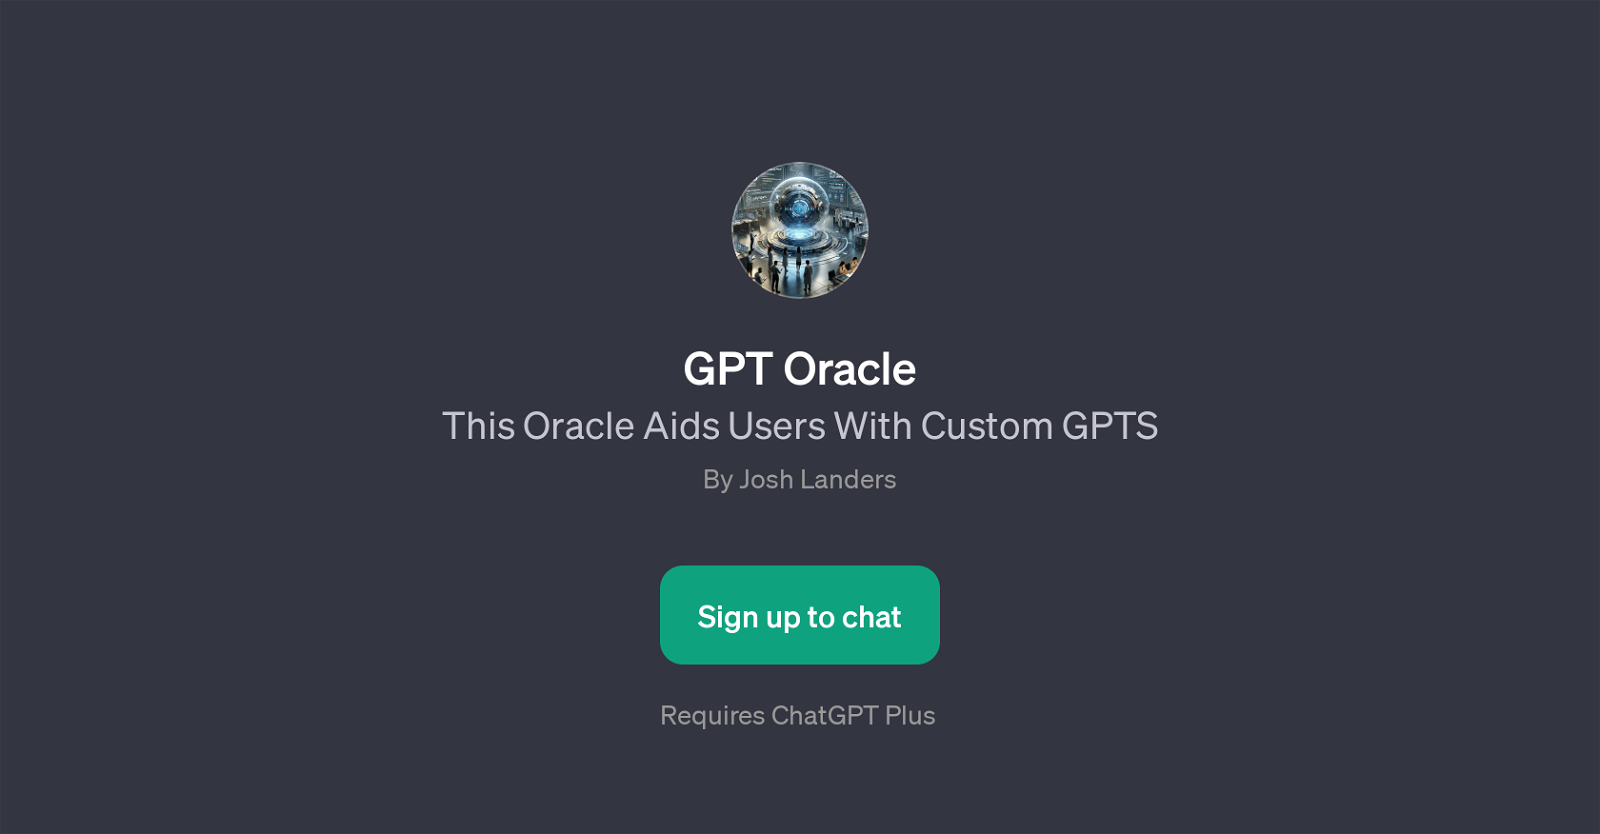 GPT Oracle website